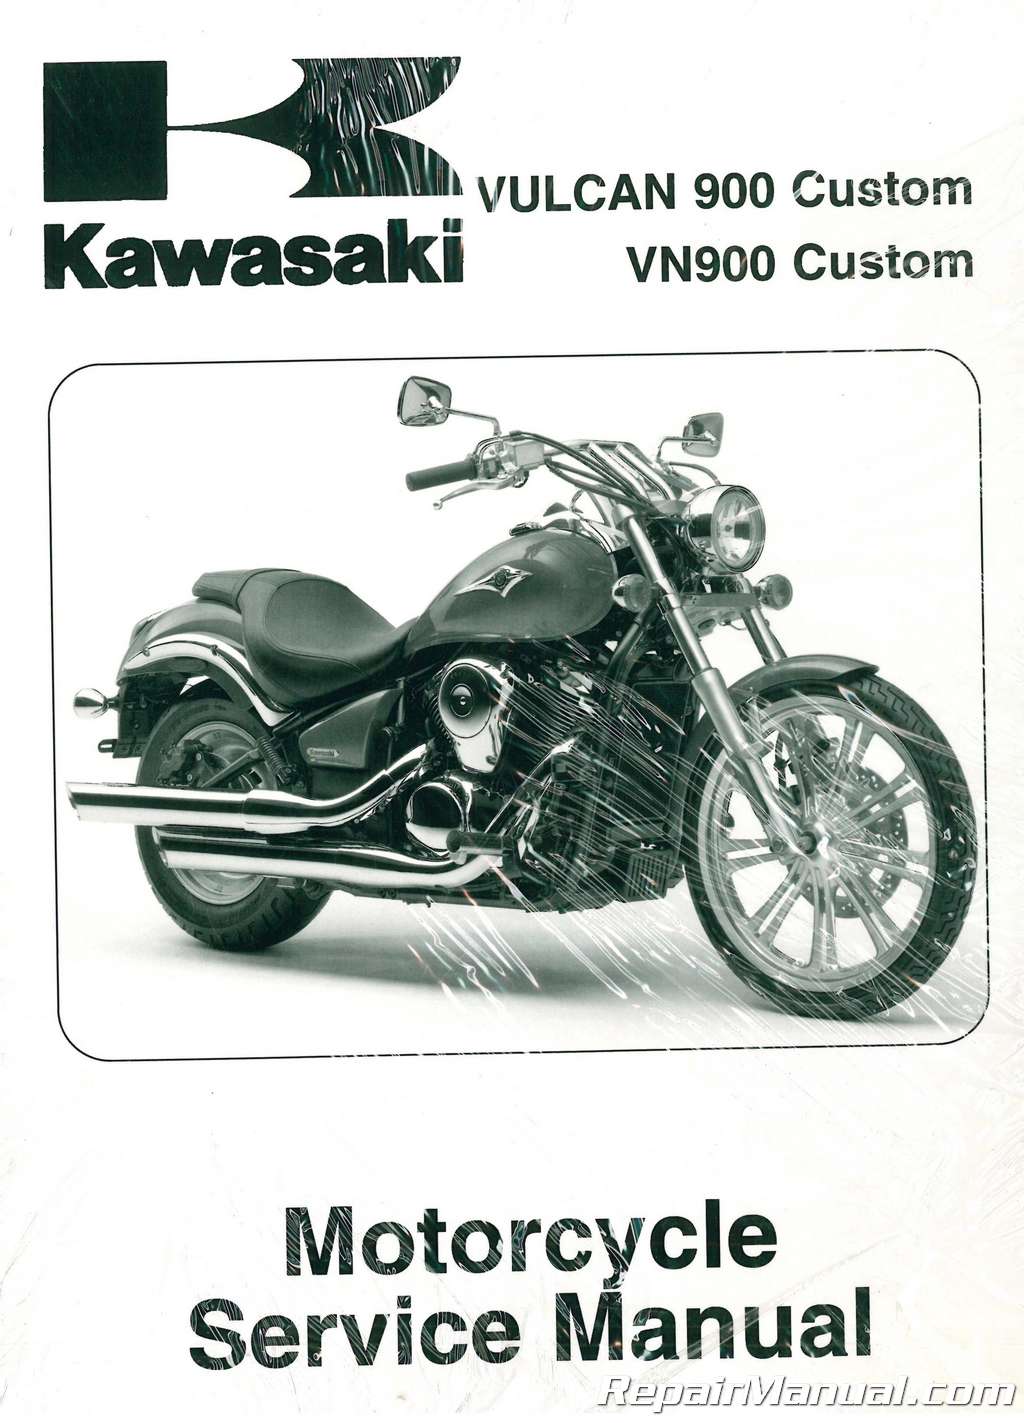 2007-2010 Kawasaki VN900C Vulcan Service Manual